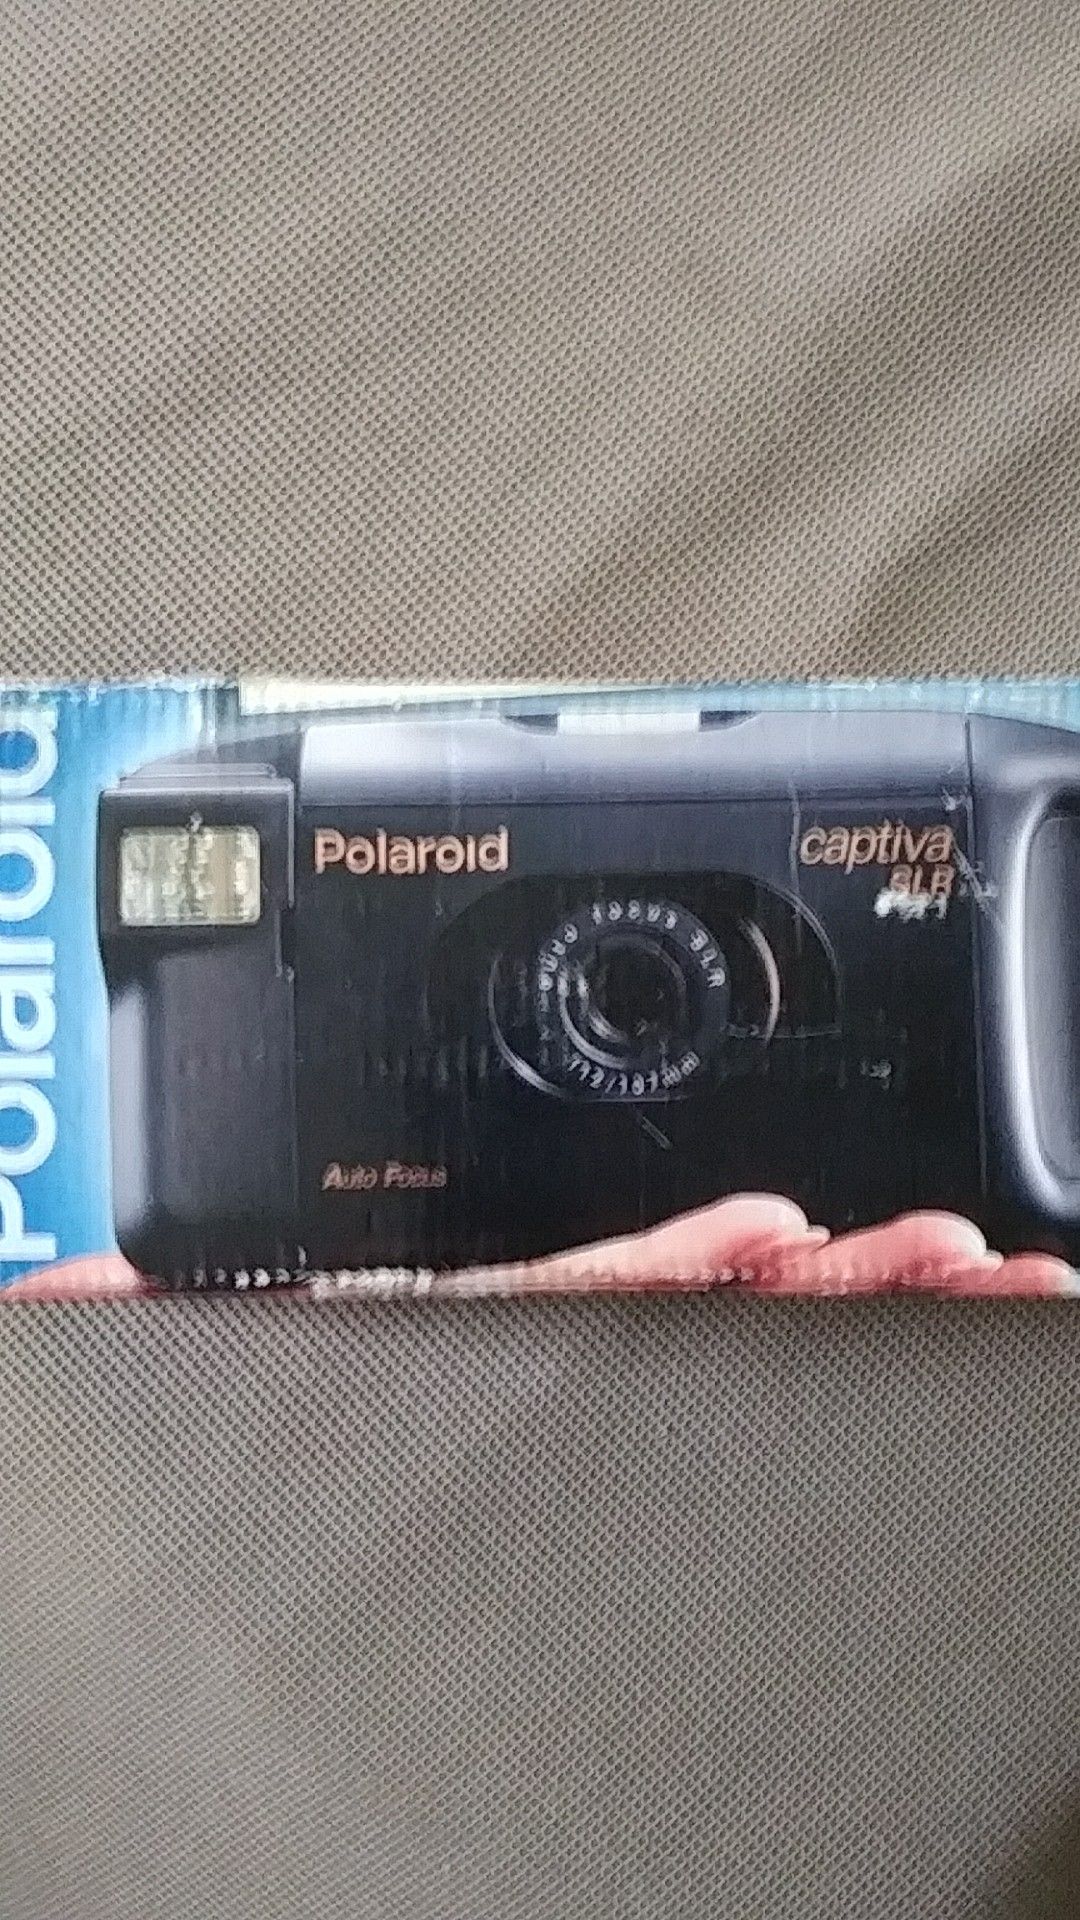 VINTAGE Polaroid Captiva SLR